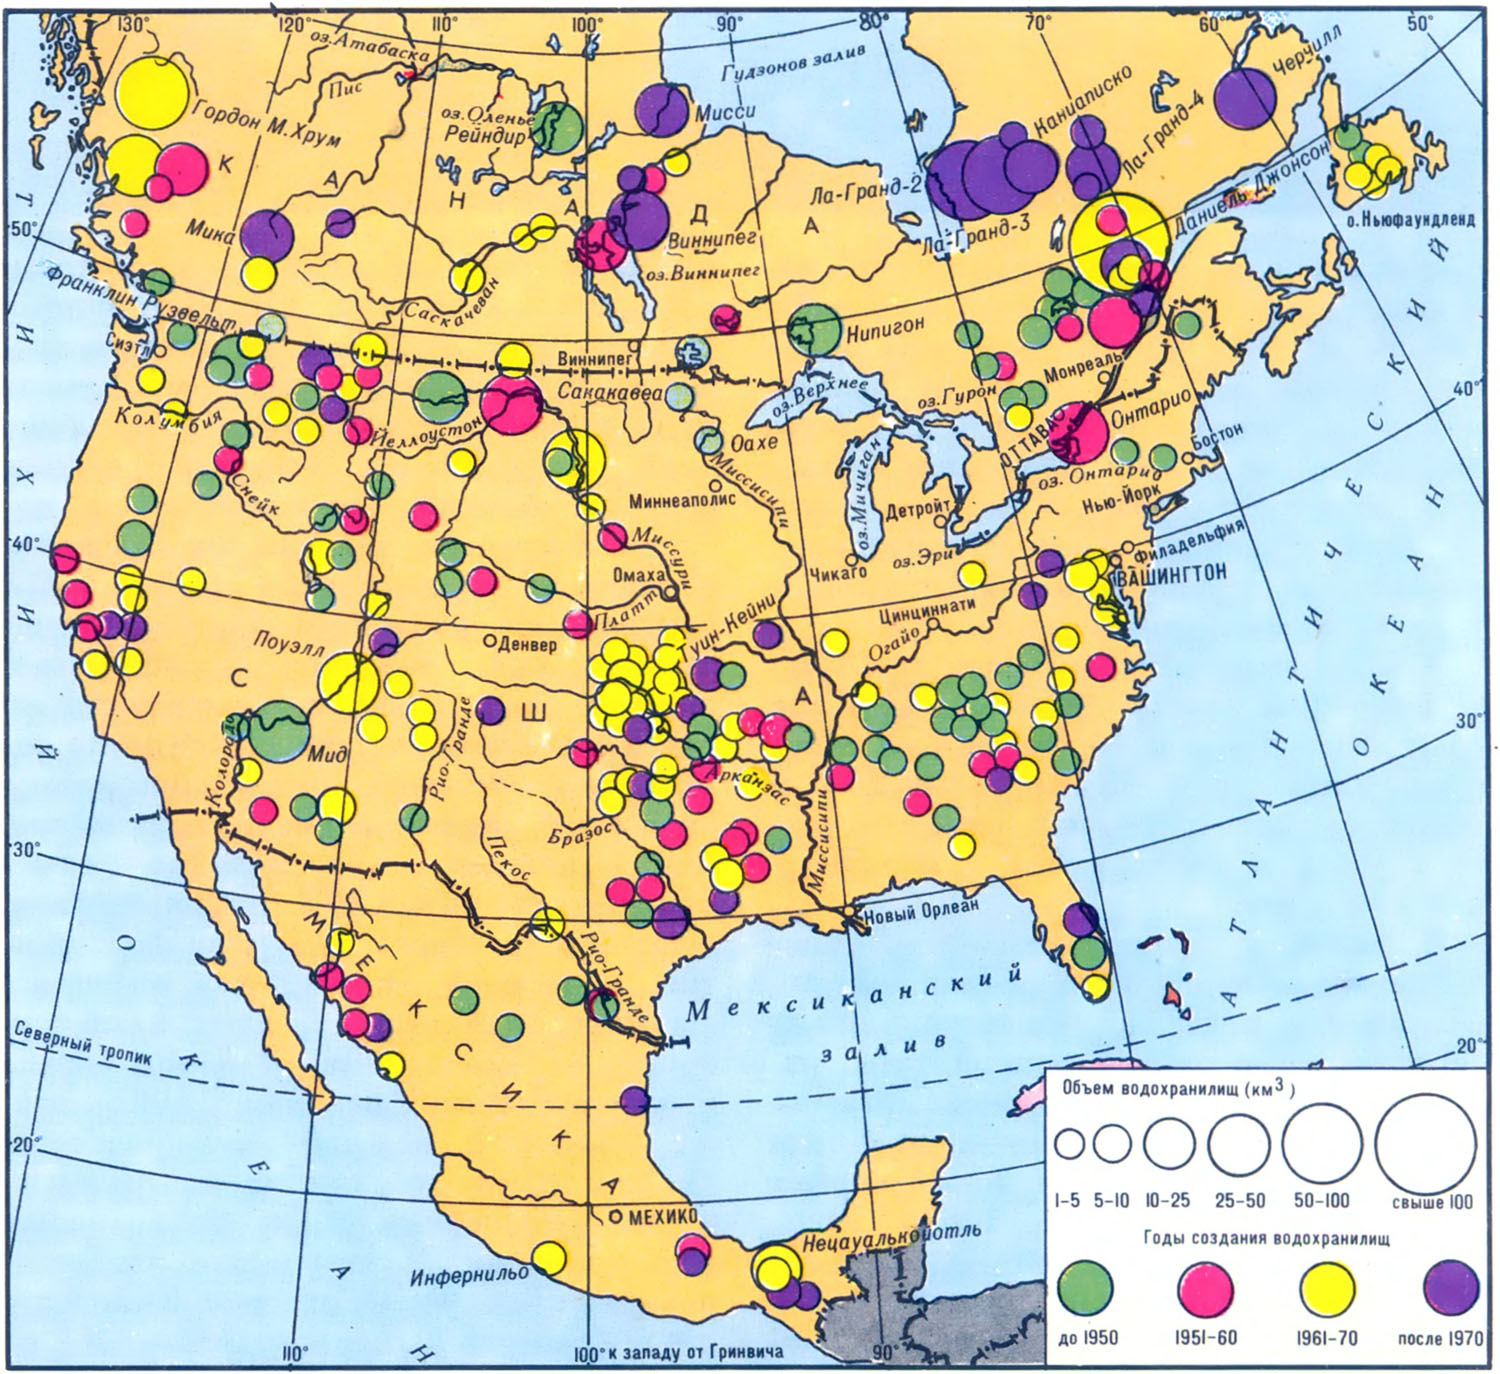 Полезные ископаемые материка северная америка. Карта промышленности Северной Америки. Основные полезные ископаемые США на карте. Карта полезных ископаемых США И Канады. Минеральные ресурсы США карта.